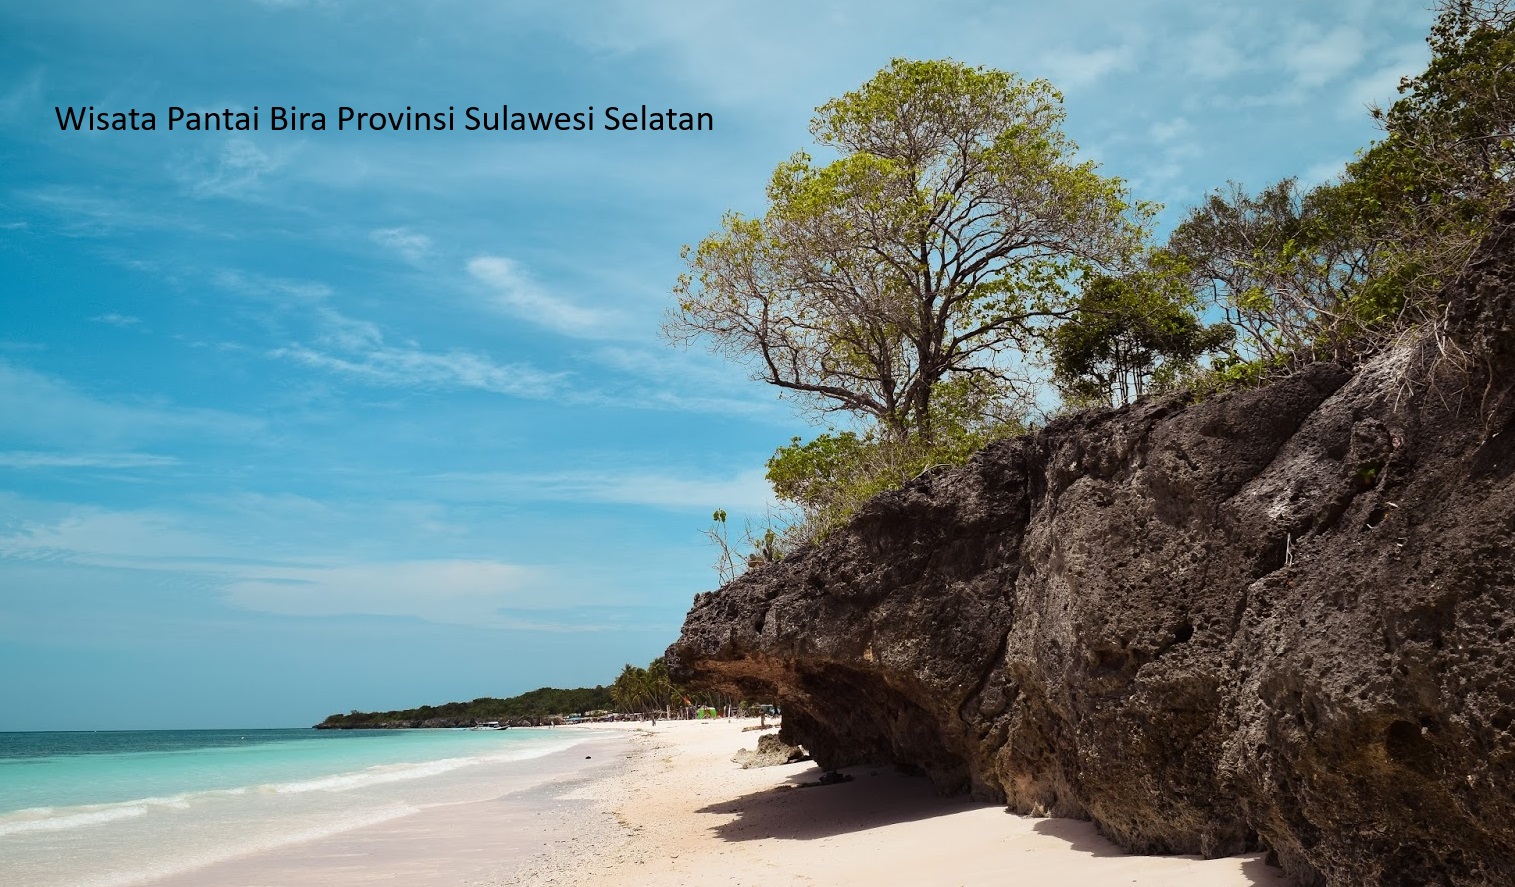 Rencana Pemekaran Wilayah Sulawesi Selatan: Menyingkap Kaya Budaya dan Potensi Daerah Bugis Timur